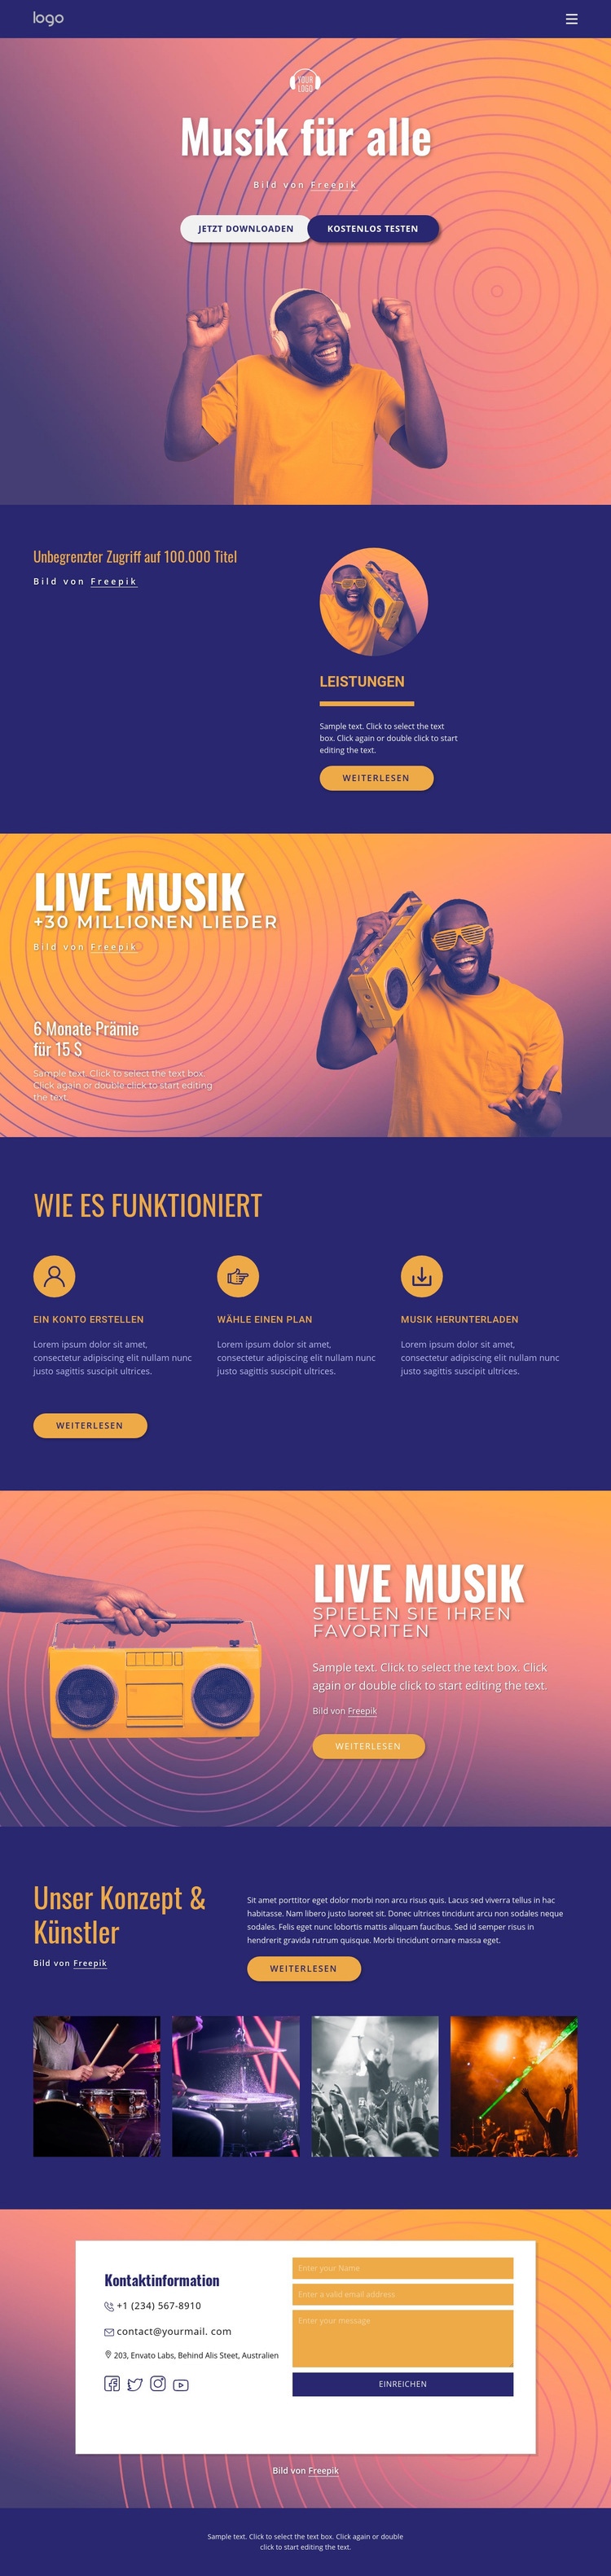 Musik für alle Website design